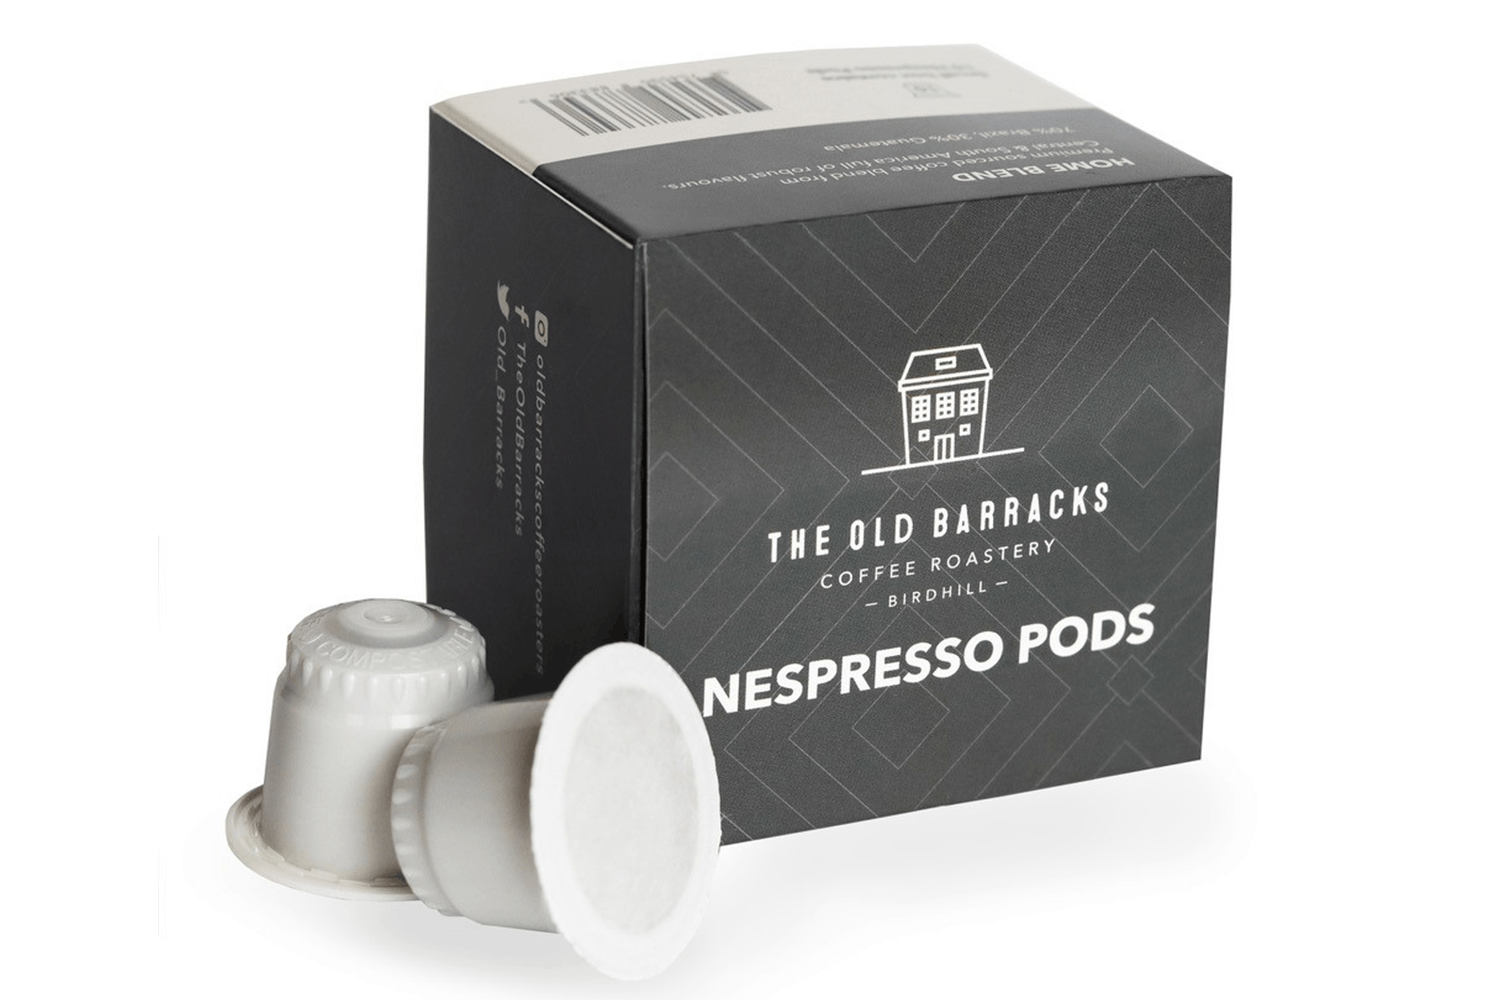 Private Label Pods for Nespresso